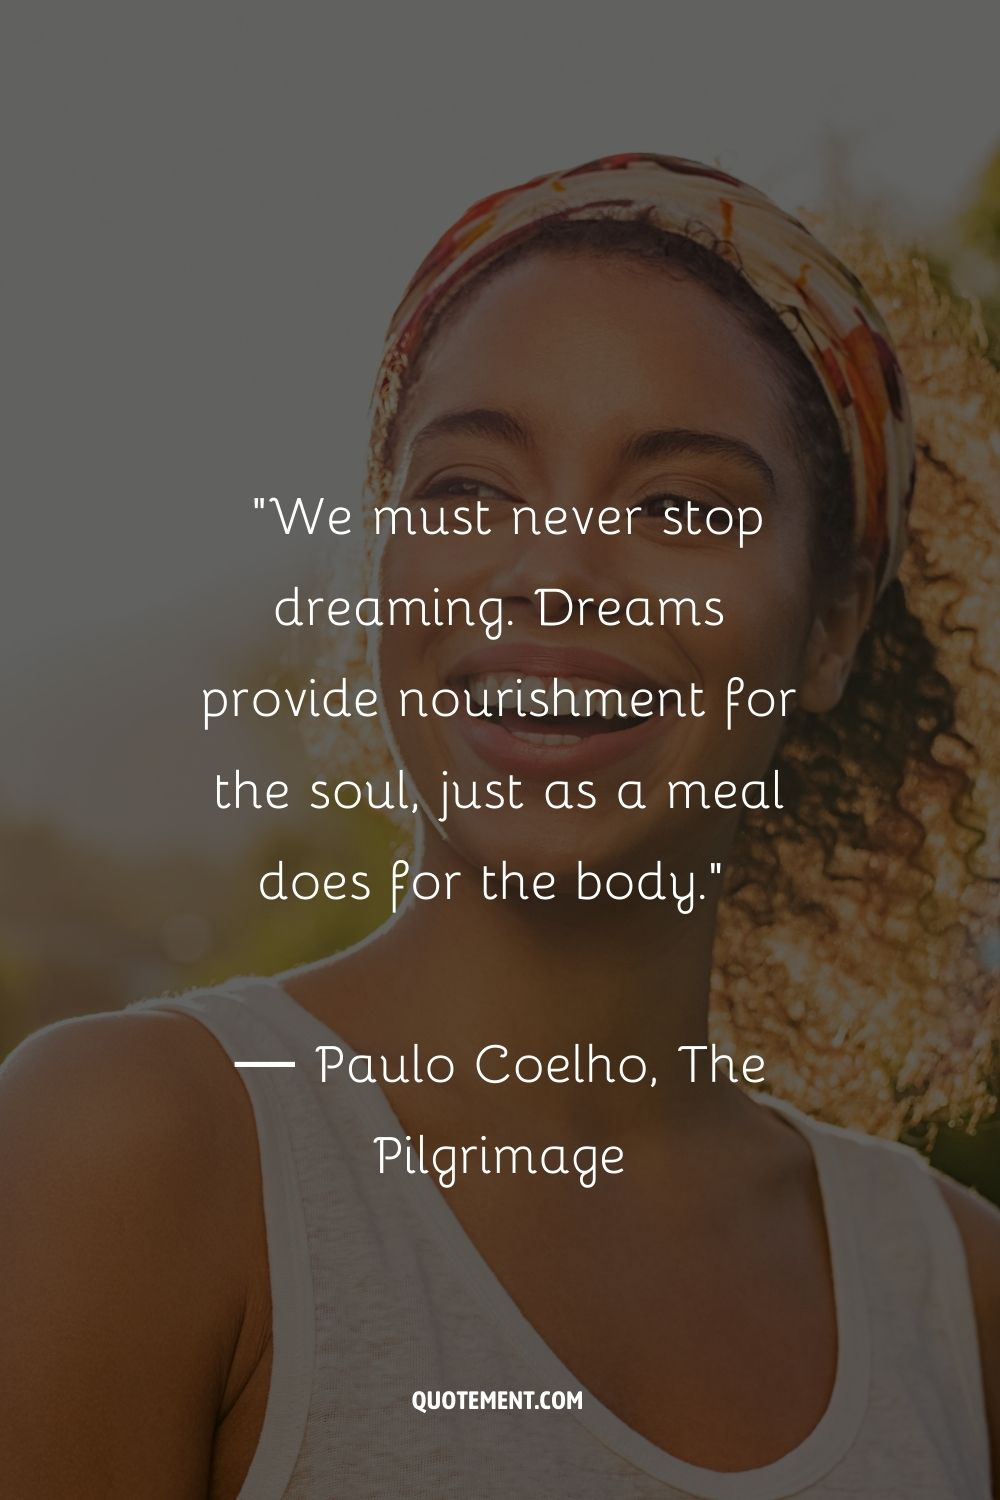 Nunca debemos dejar de soñar. Los sueños alimentan el alma, igual que una comida lo hace con el cuerpo.